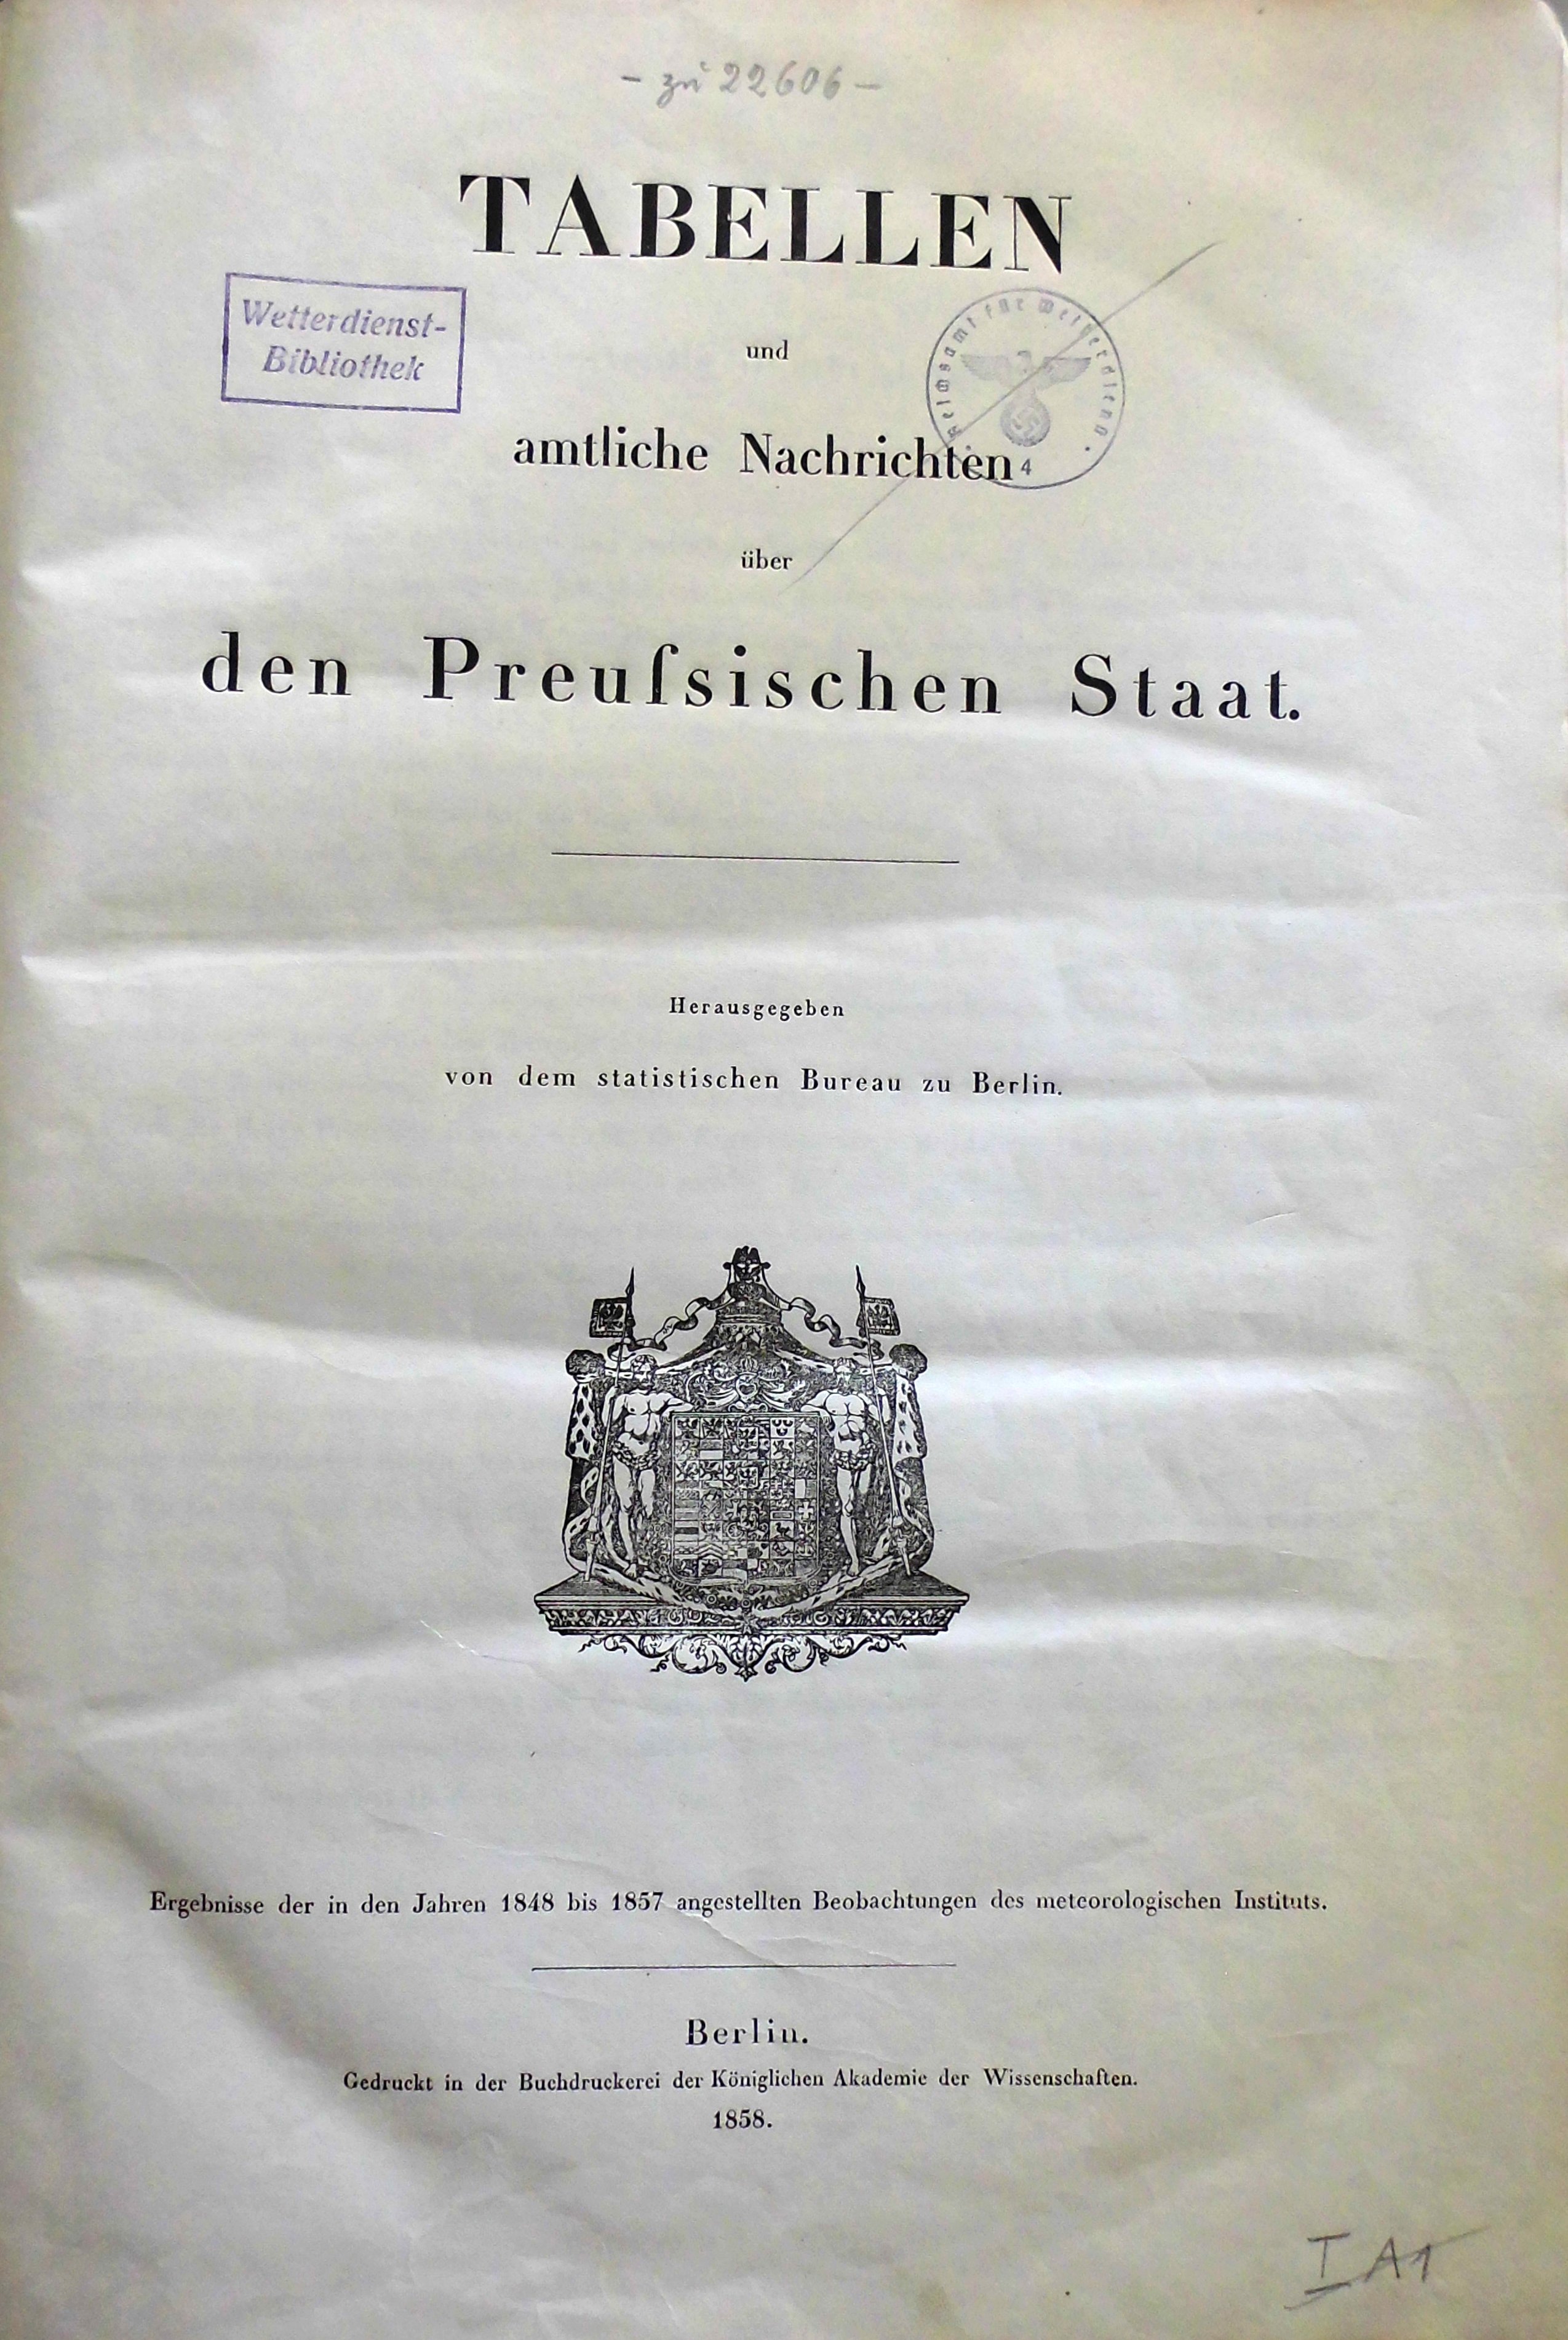 Tabellen und amtliche Mitteilungen über den Preußischen Staat (Wettermuseum CC BY-NC-SA)